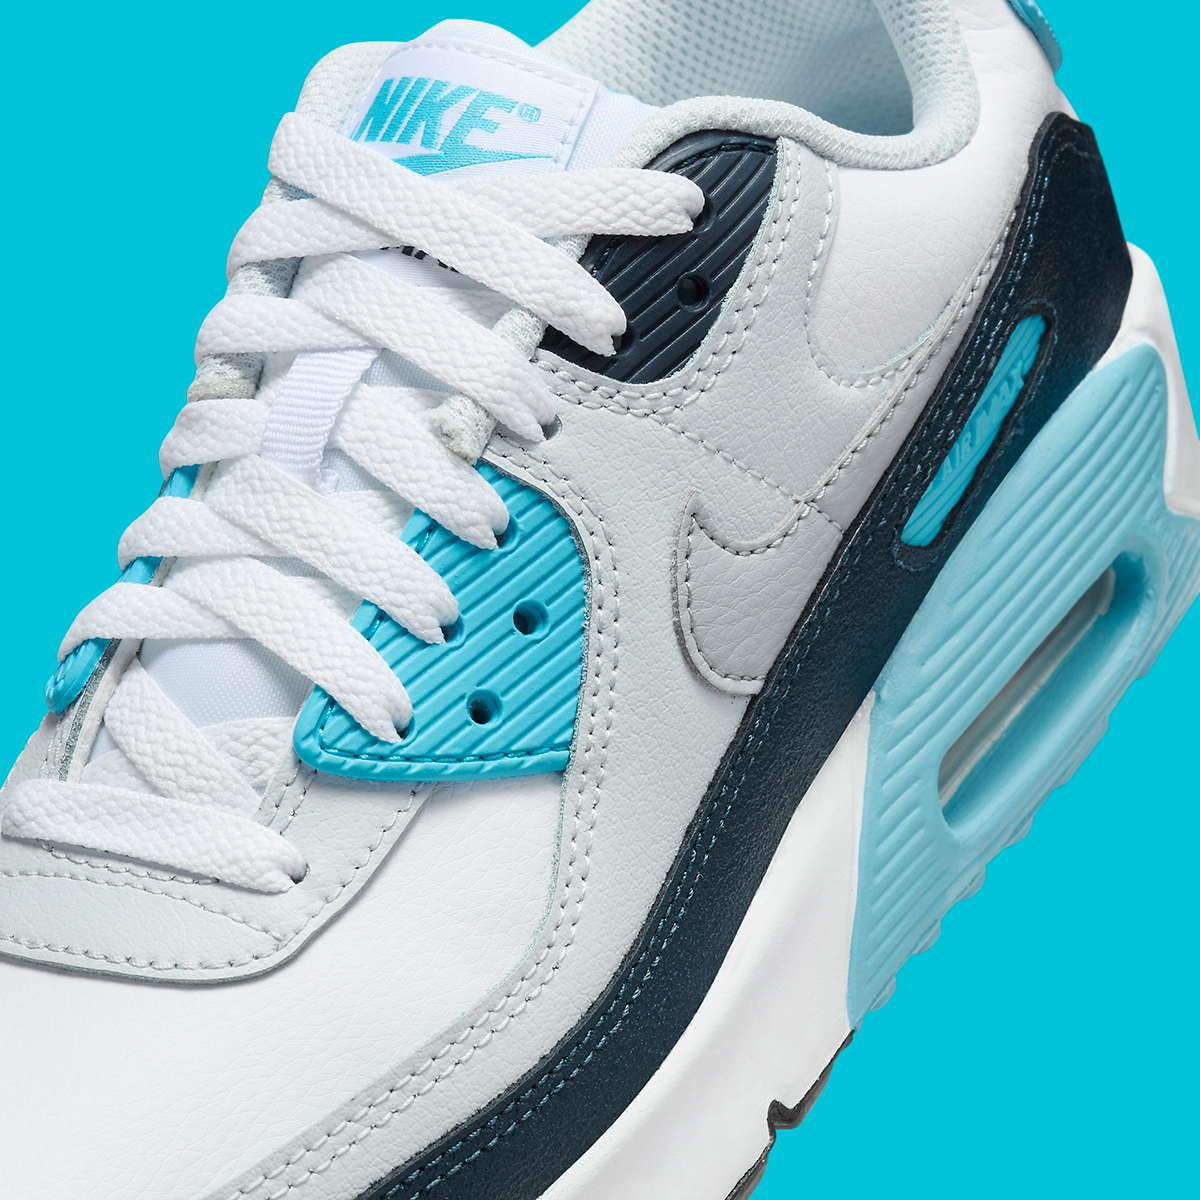 Nike retro 11 low on feet Gs White Aquarius Blue Hf6358 100 1